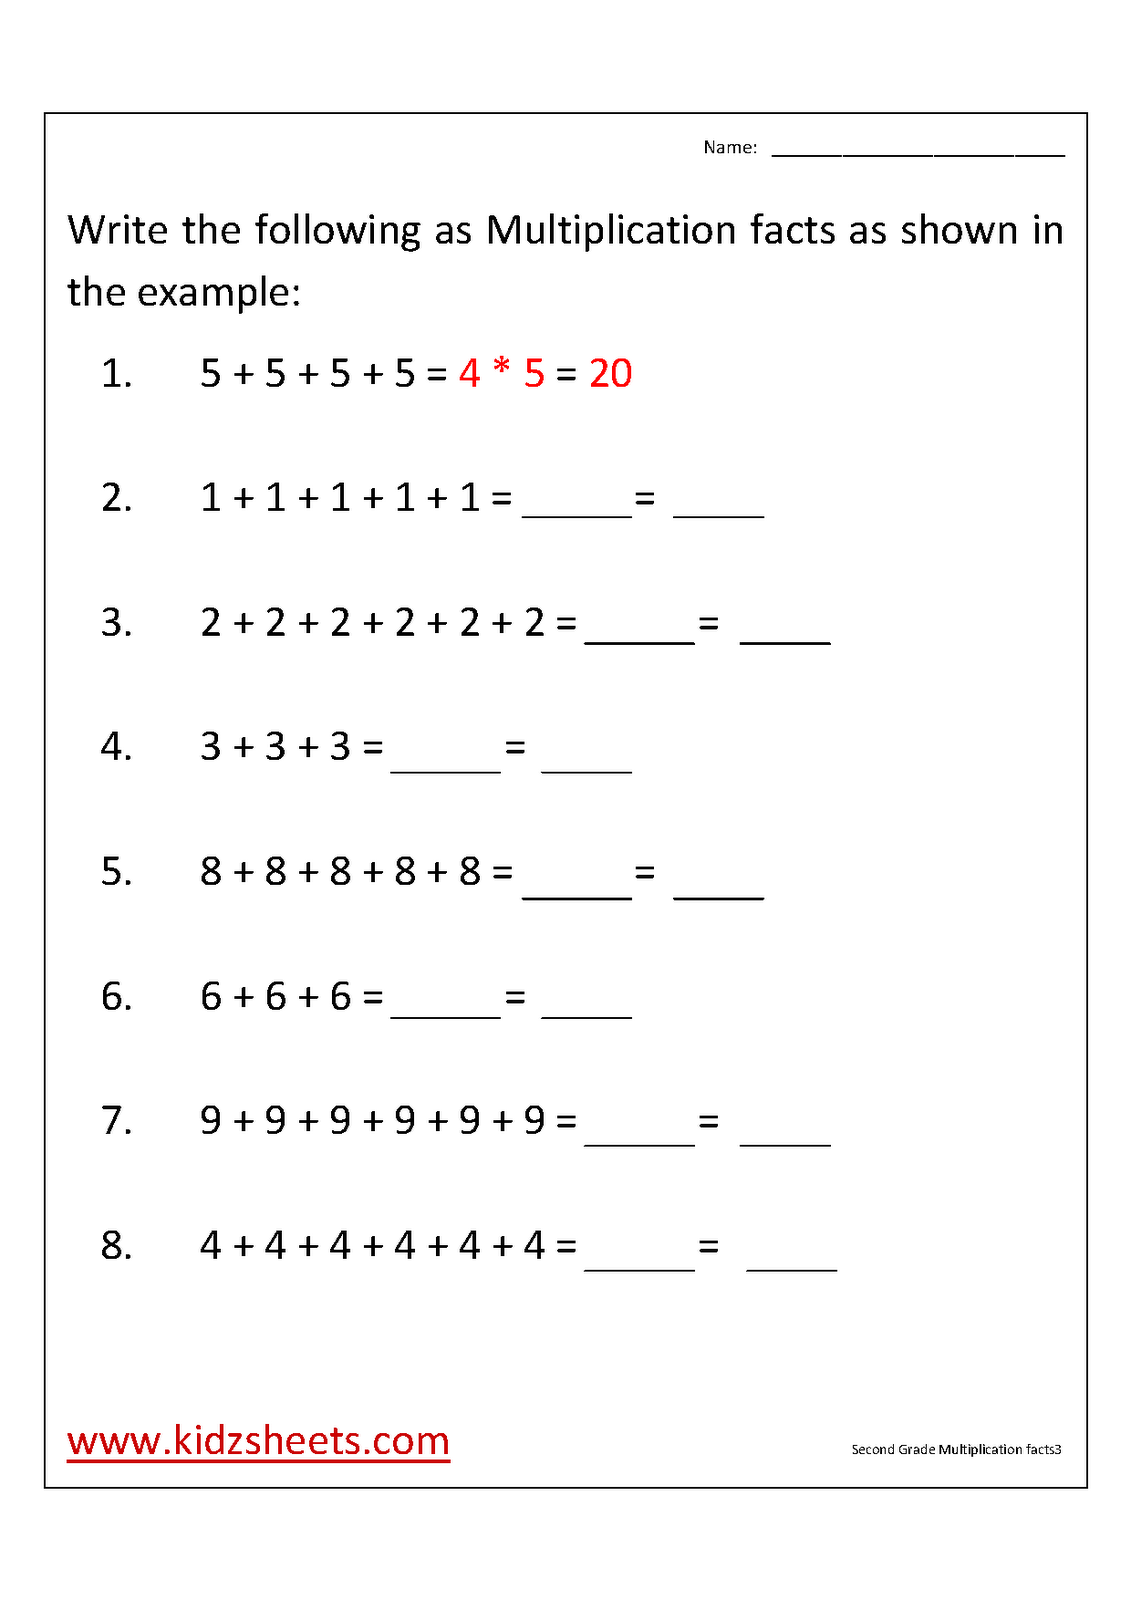 Printable Multiplication Worksheets 2nd Grade Image